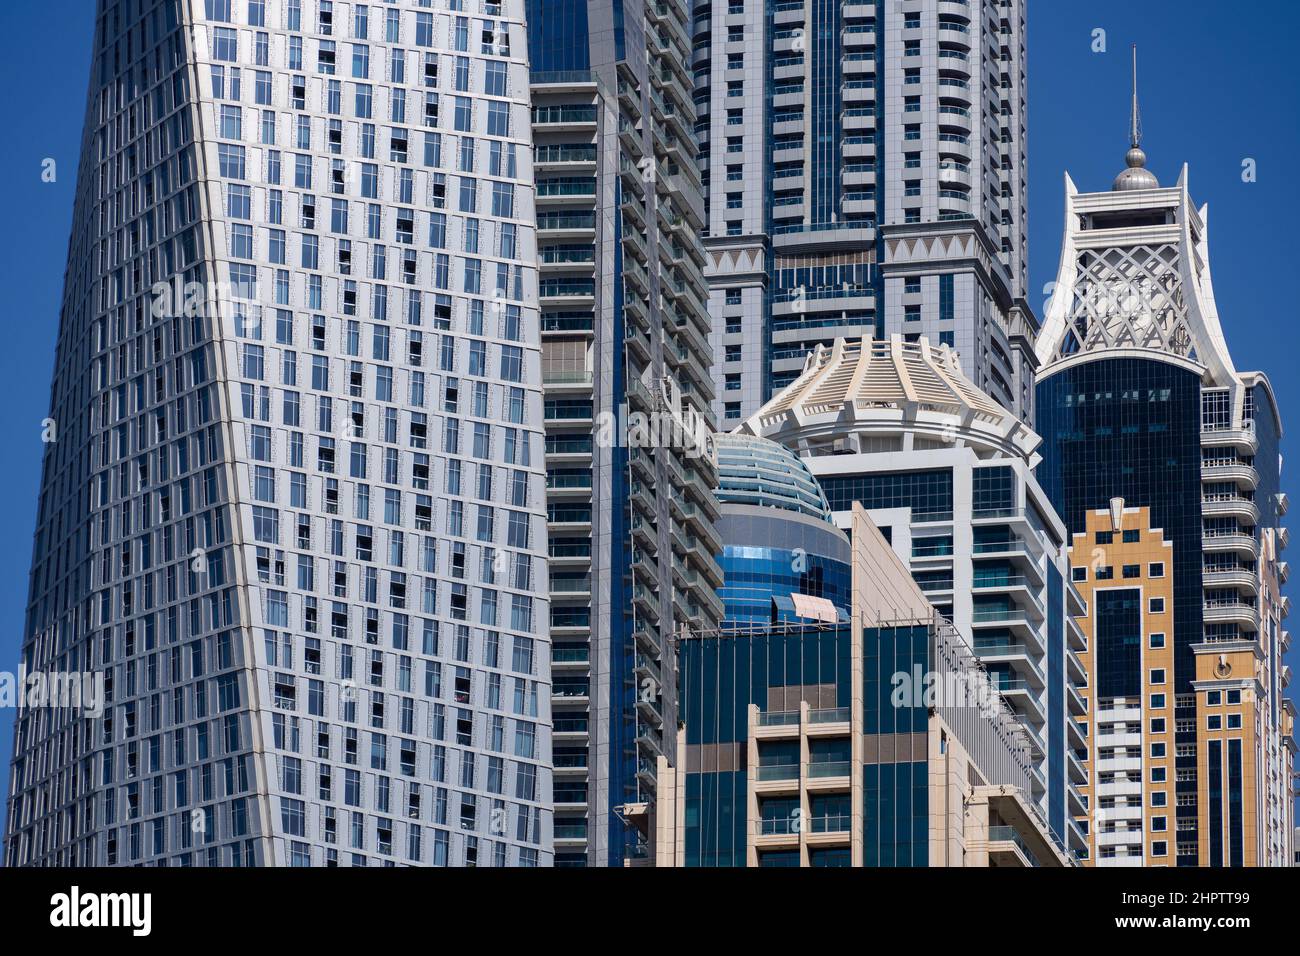 05 2021 décembre - Dubaï, Émirats arabes Unis : vue détaillée de la tour Cayan Twist, de la tour Emiarates Crown, de la tour Princess et d'autres gratte-ciels de la marina de Dubaï Banque D'Images